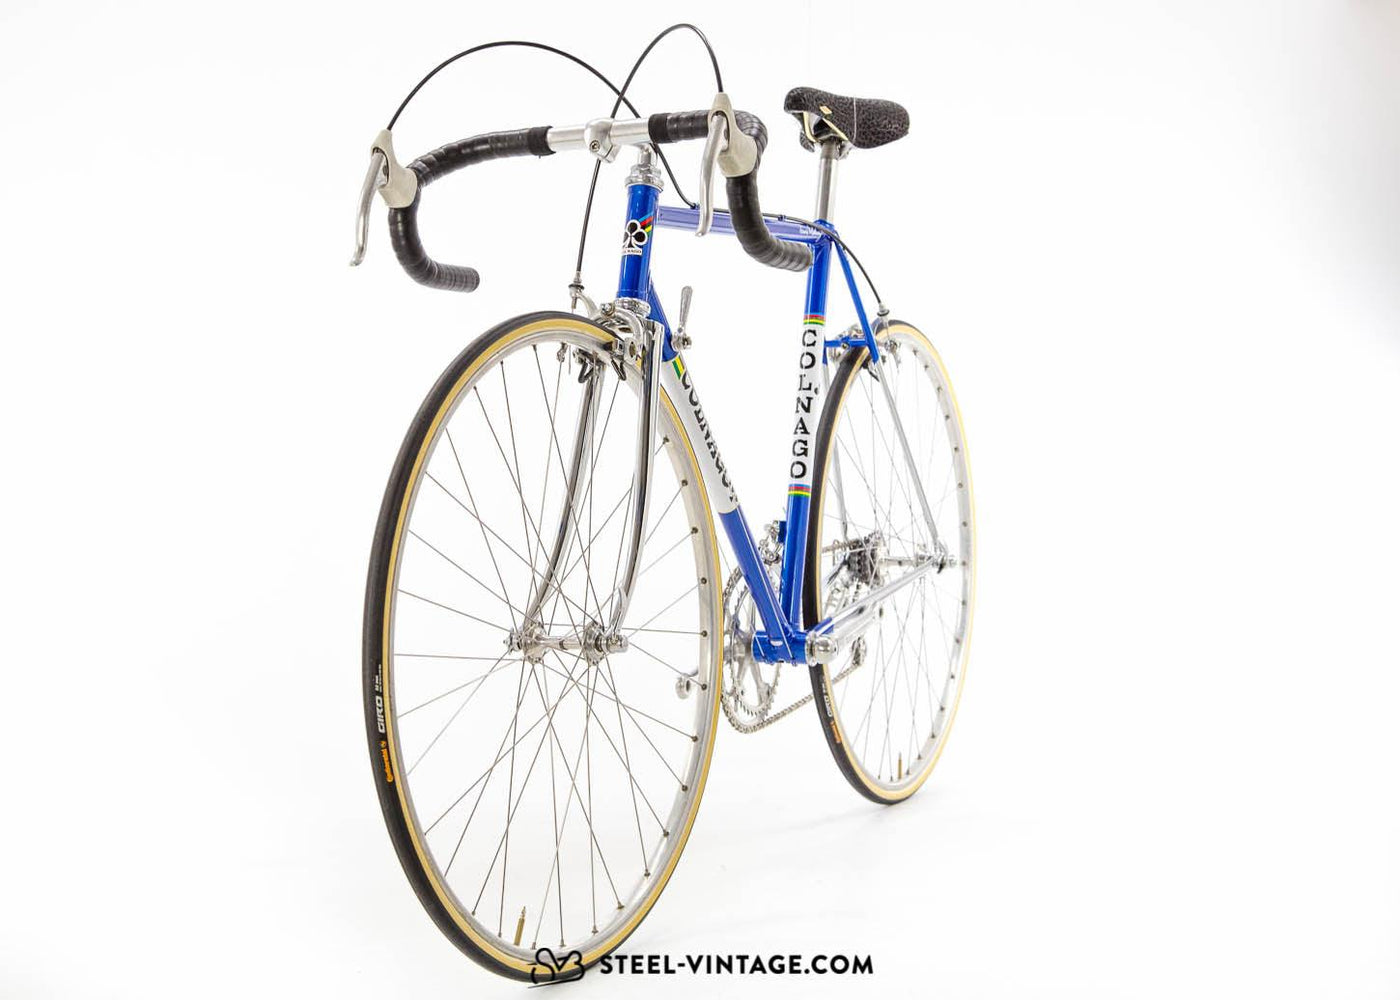 Colnago Super Italian Vintage Racing Bicycle - Steel Vintage Bikes